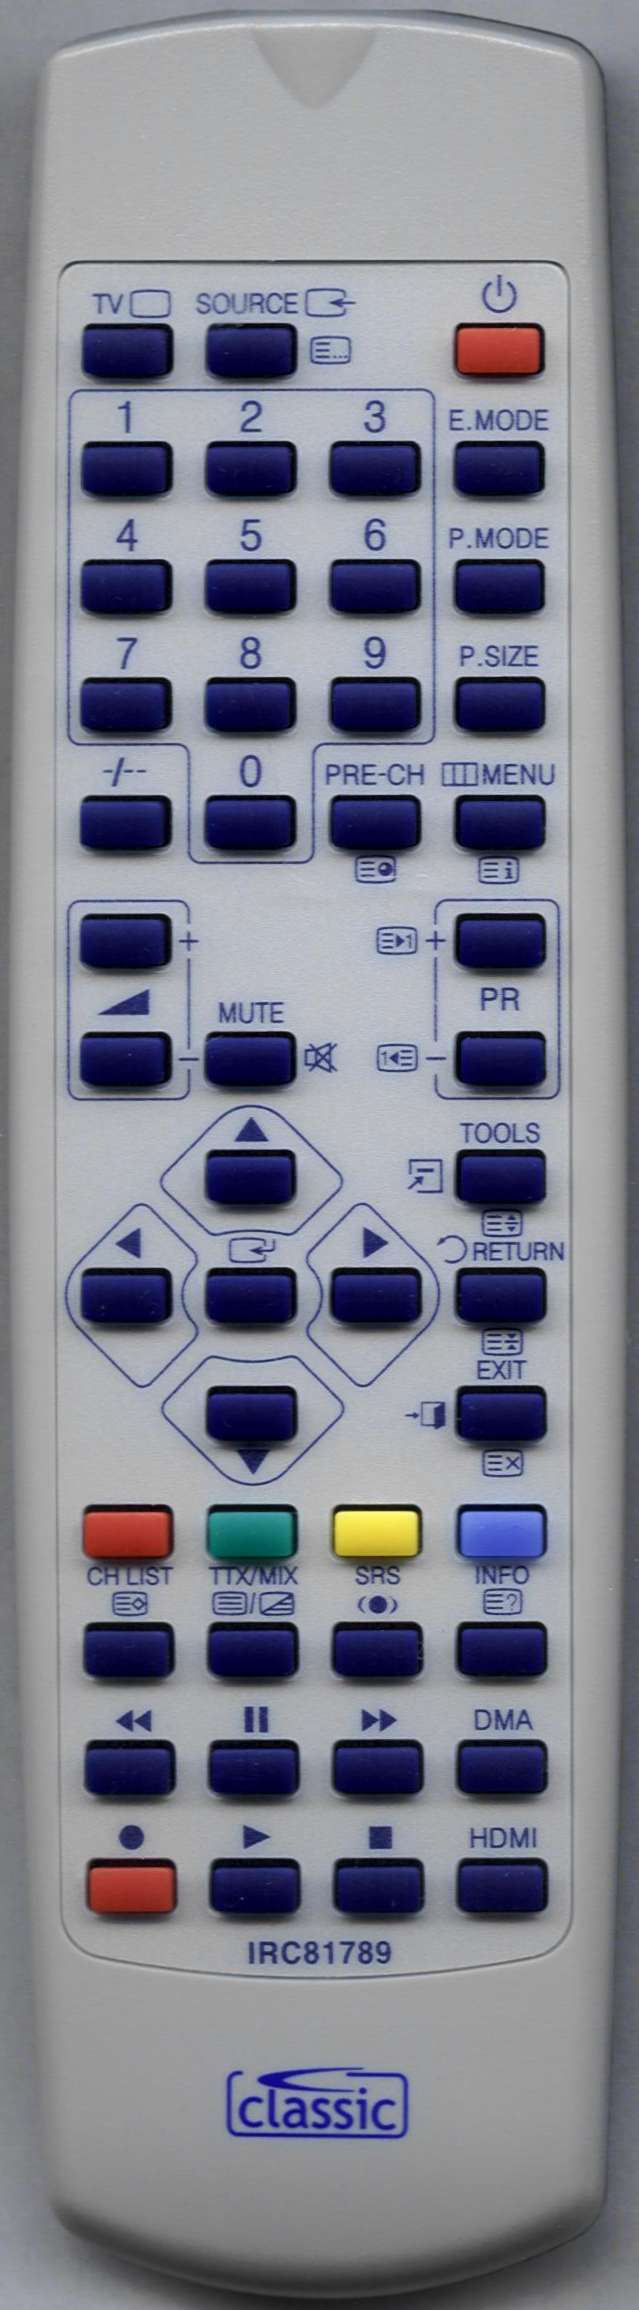 SAMSUNG LE26A450C2 Remote Control Alternative